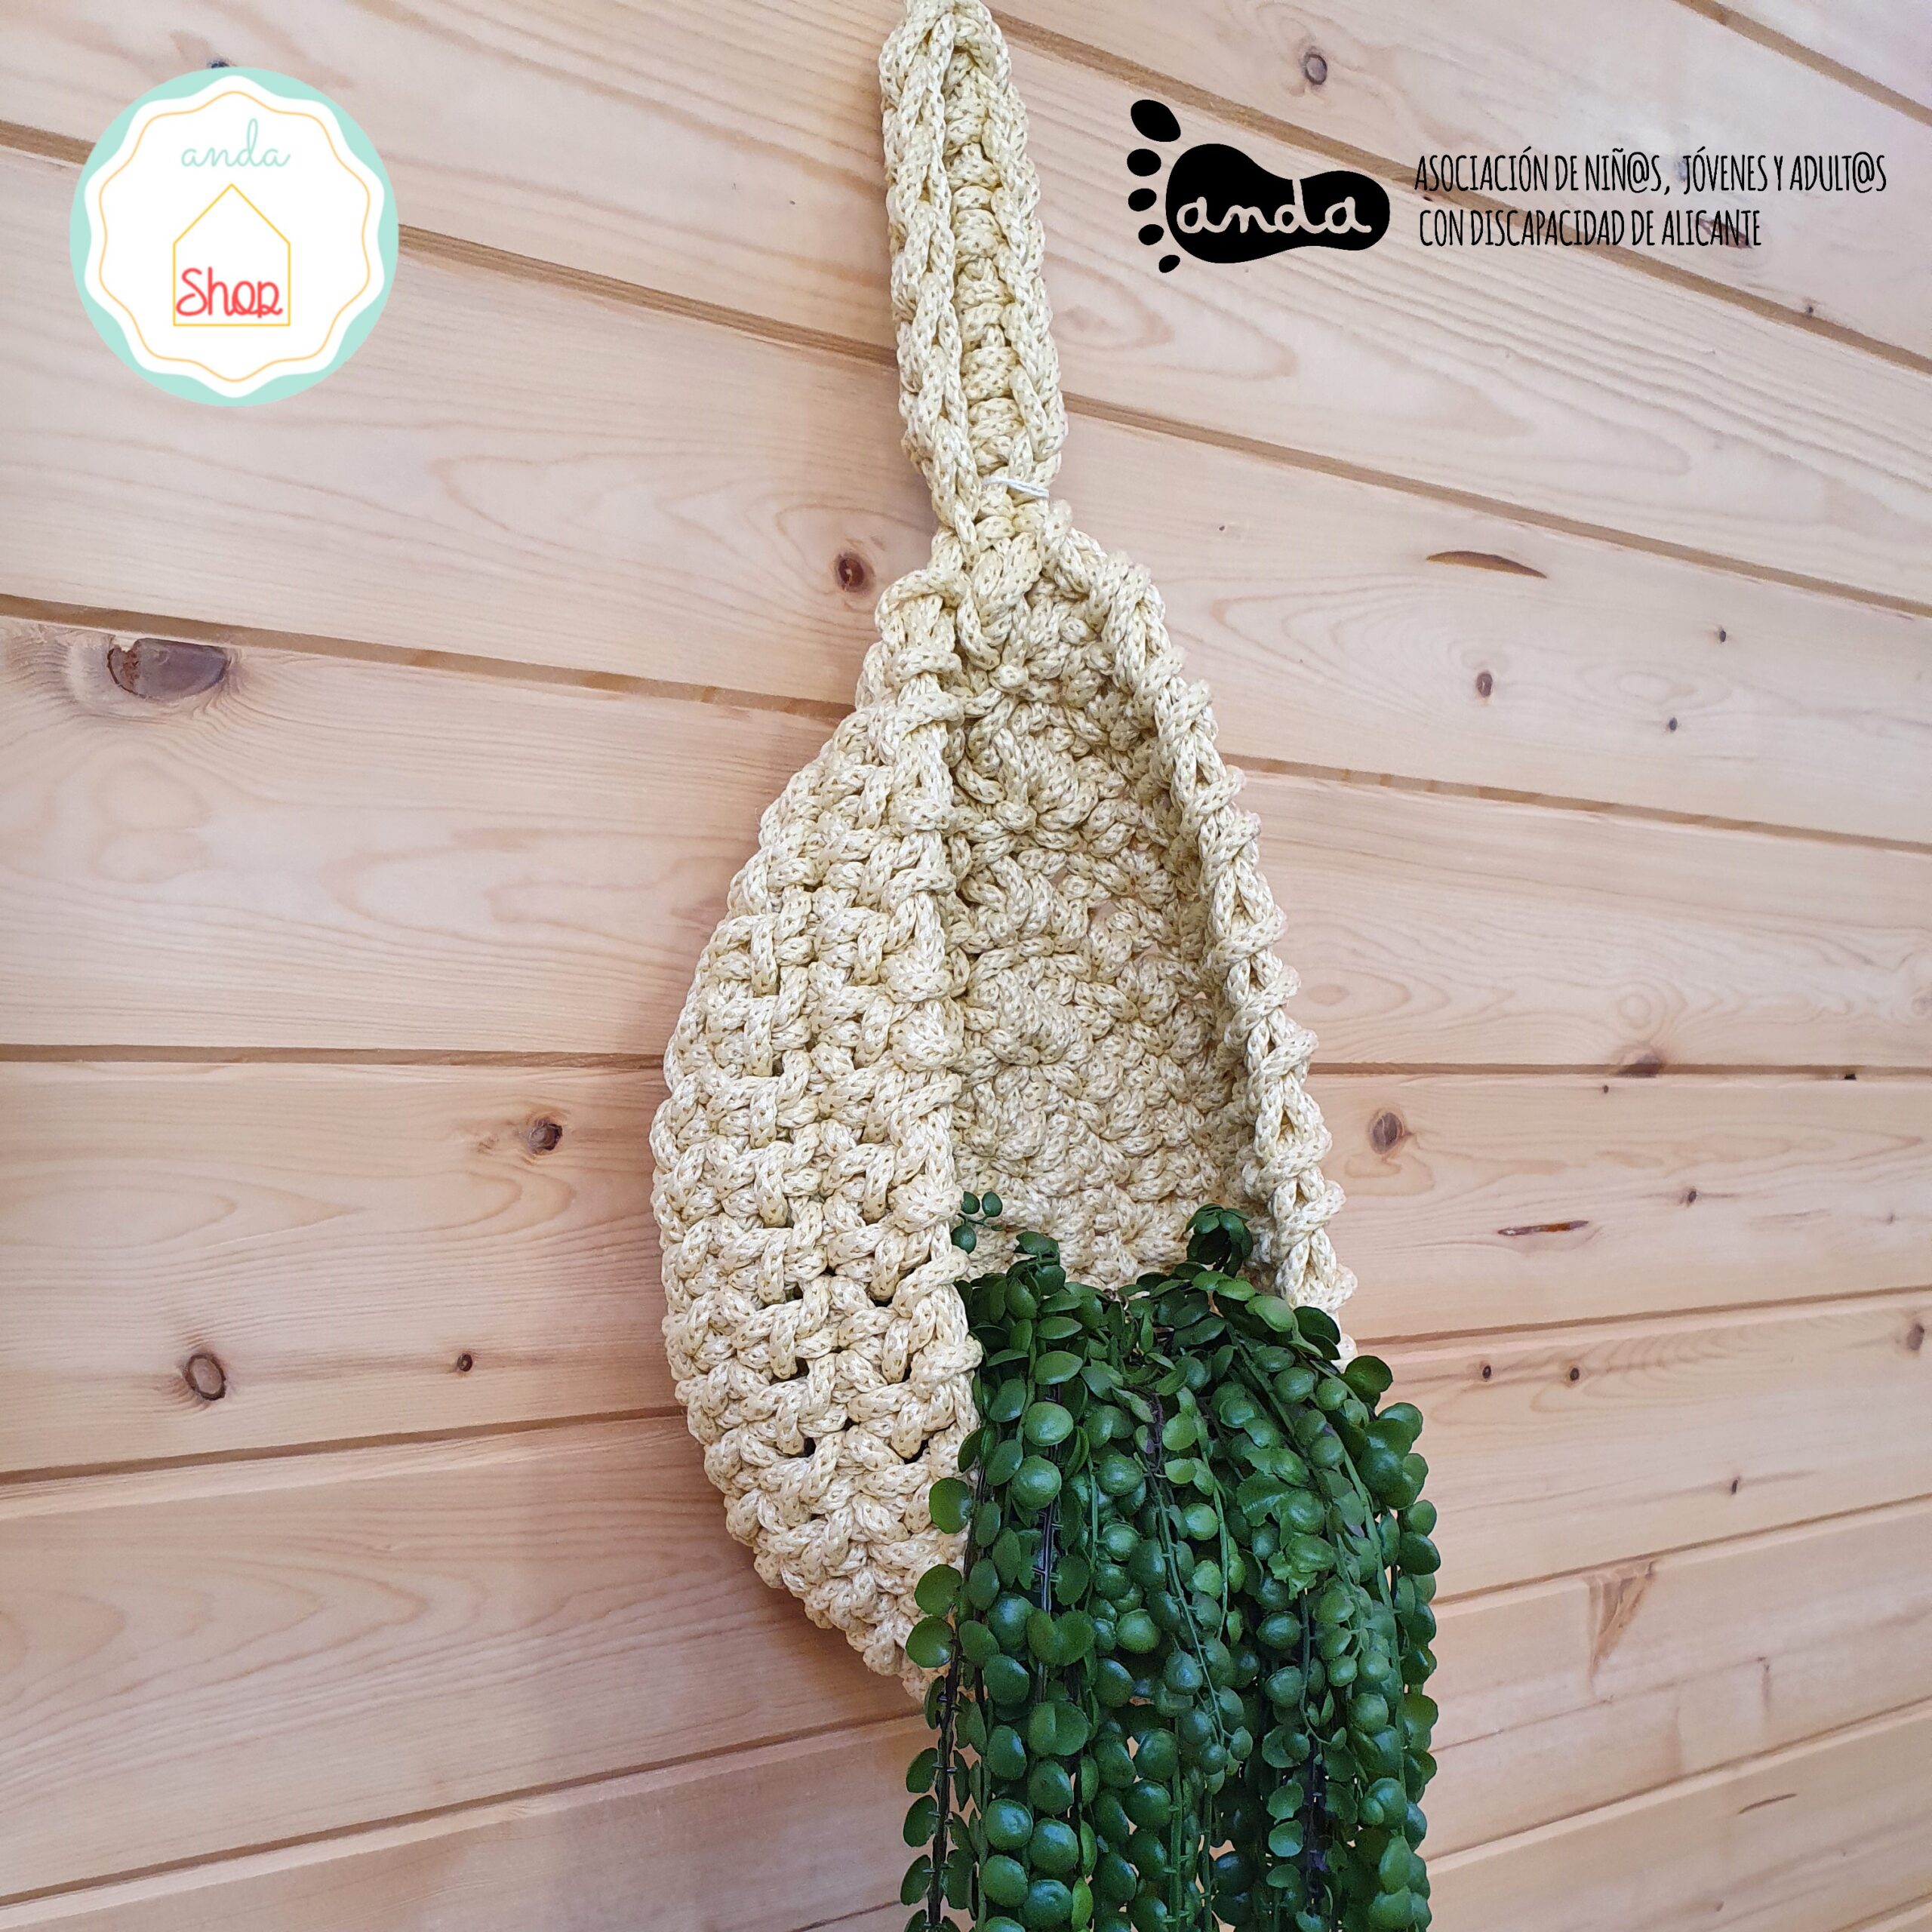 Macetero cesta crochet colgante grande – Anda Shop